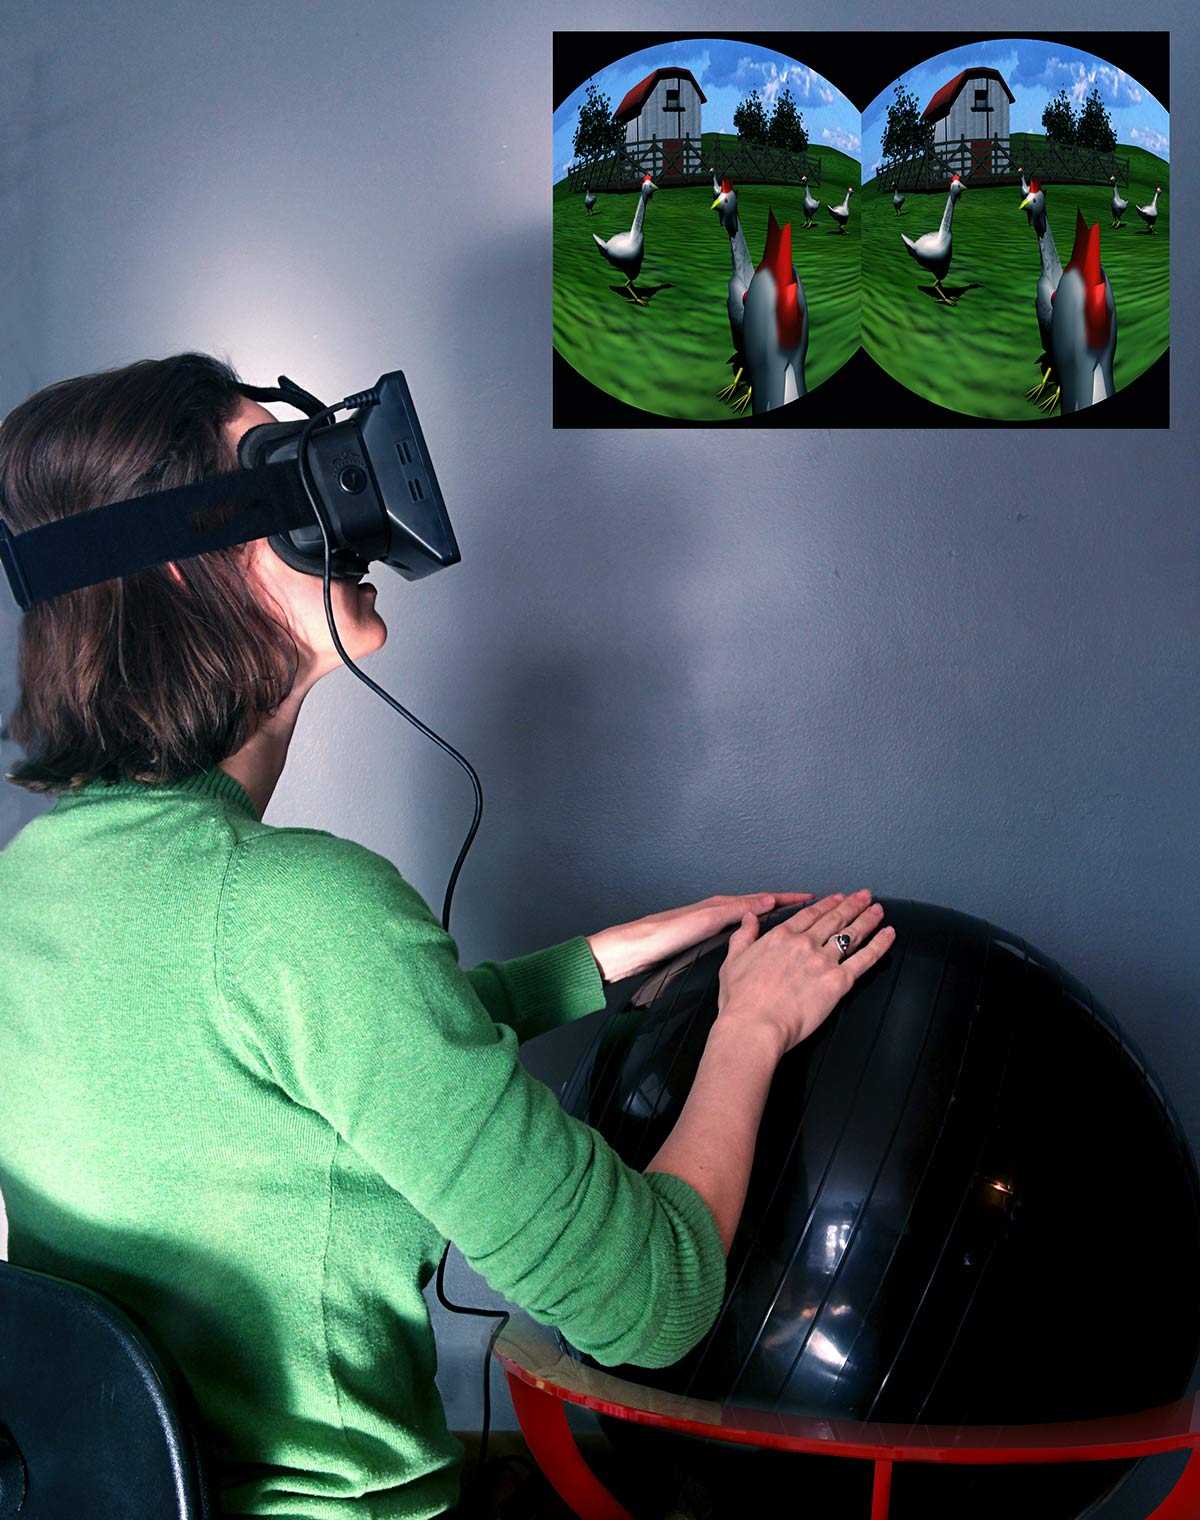 Обзор на очки виртуальной реальности rift dk2 от oculus: есть ли отличия от dk1?